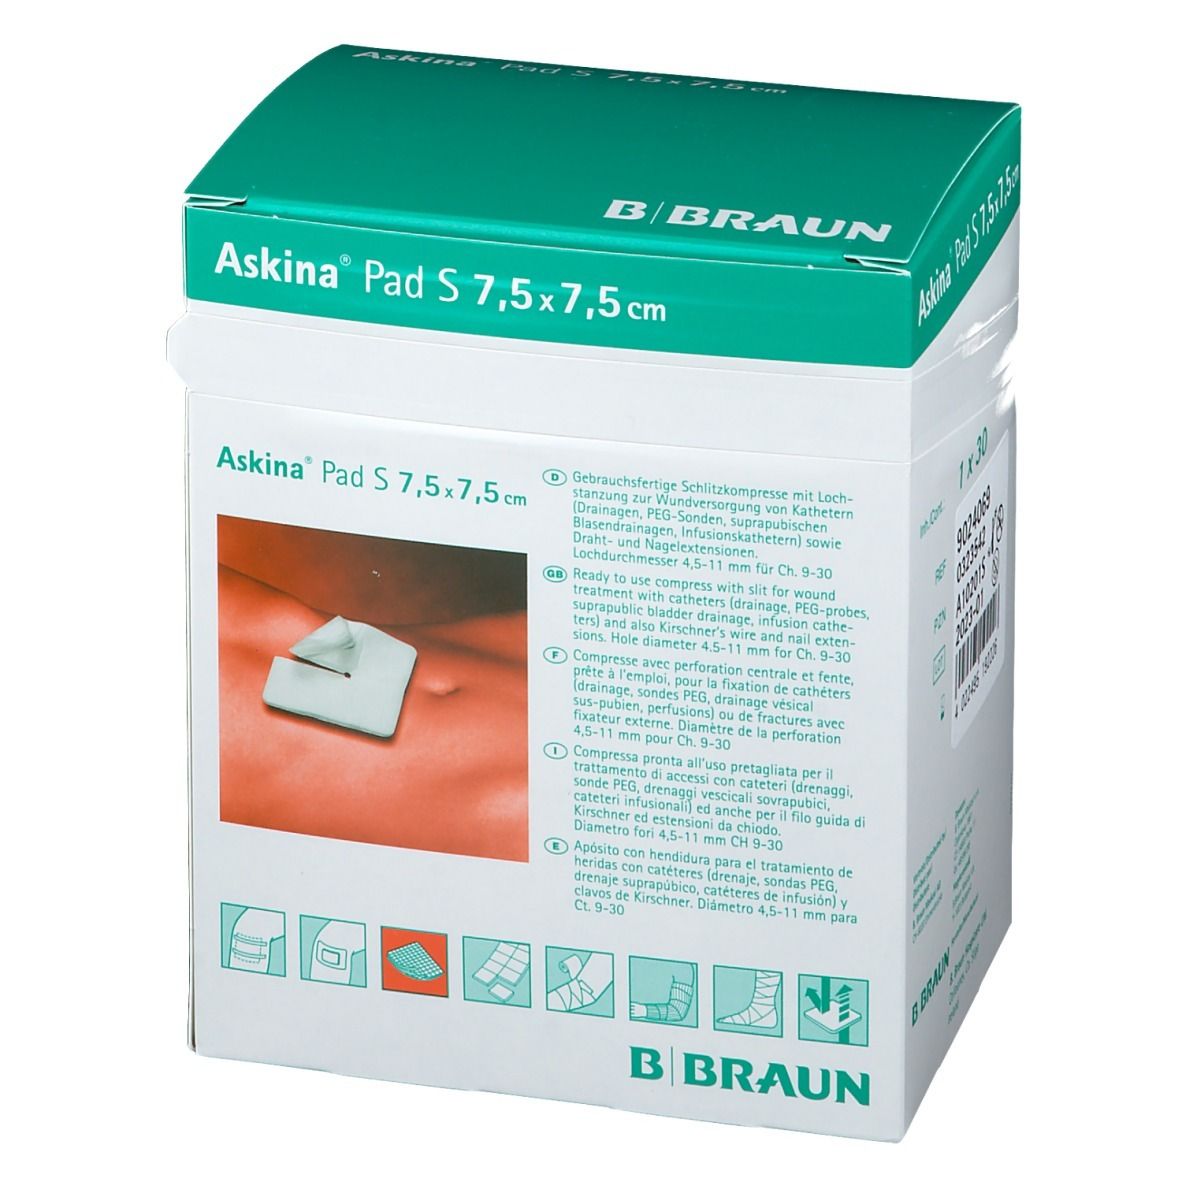 Askina® Pad S 7,5x7,5cm